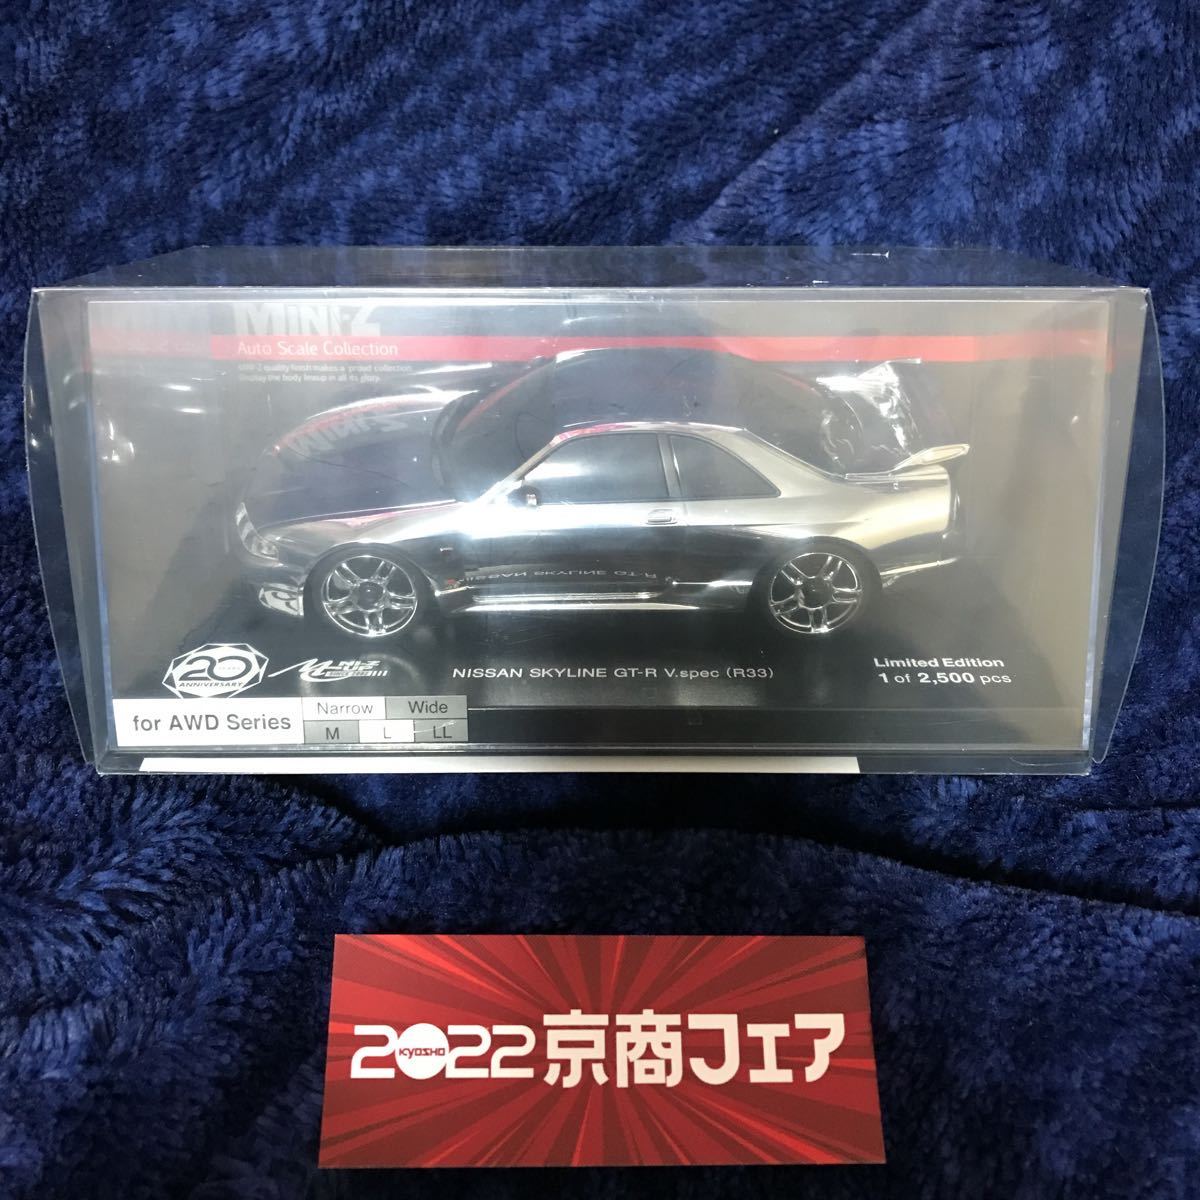 日産純正 R33 スカイライン GT-R ライセンスランプセット 生産廃止